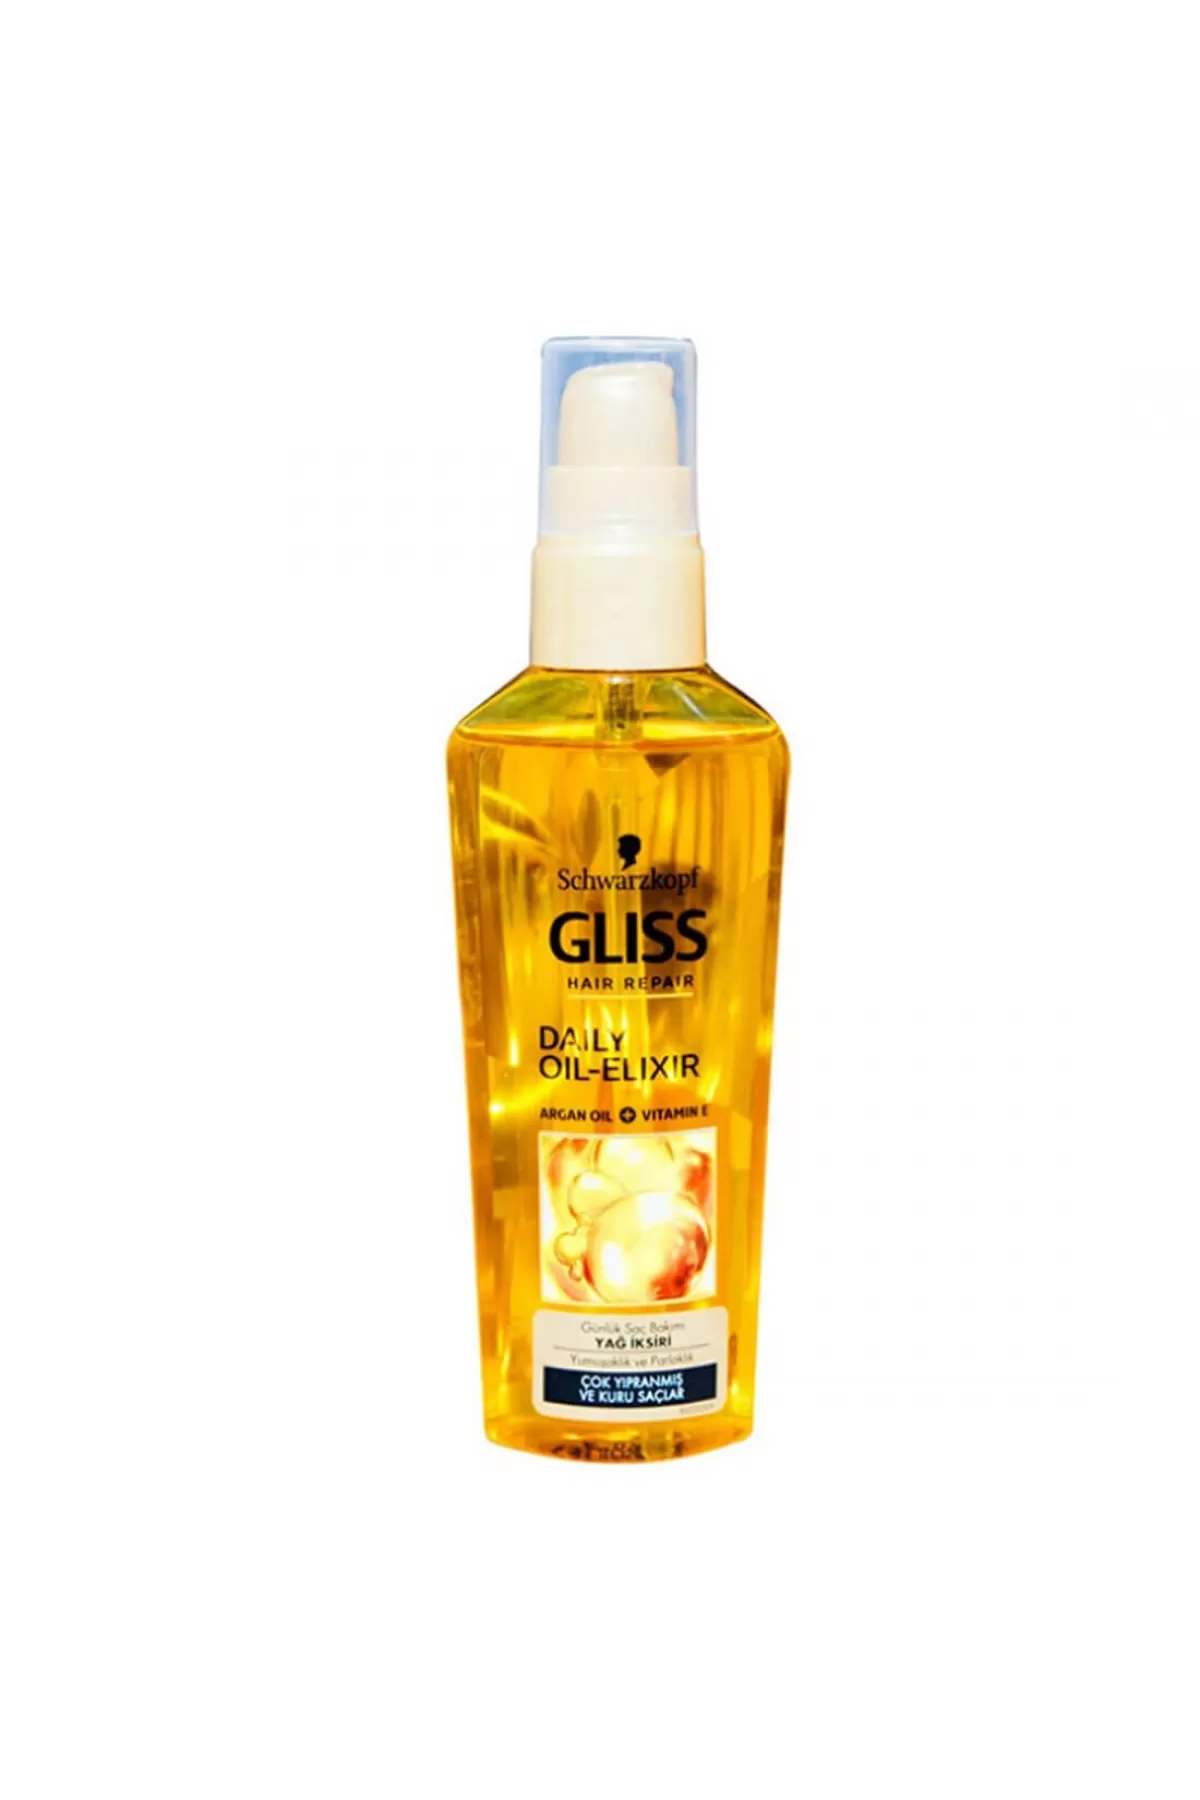 حاوی روغن آرگان و ویتامین E،مناسب برای همه موها گلیس GLISS روغن مو آرگان